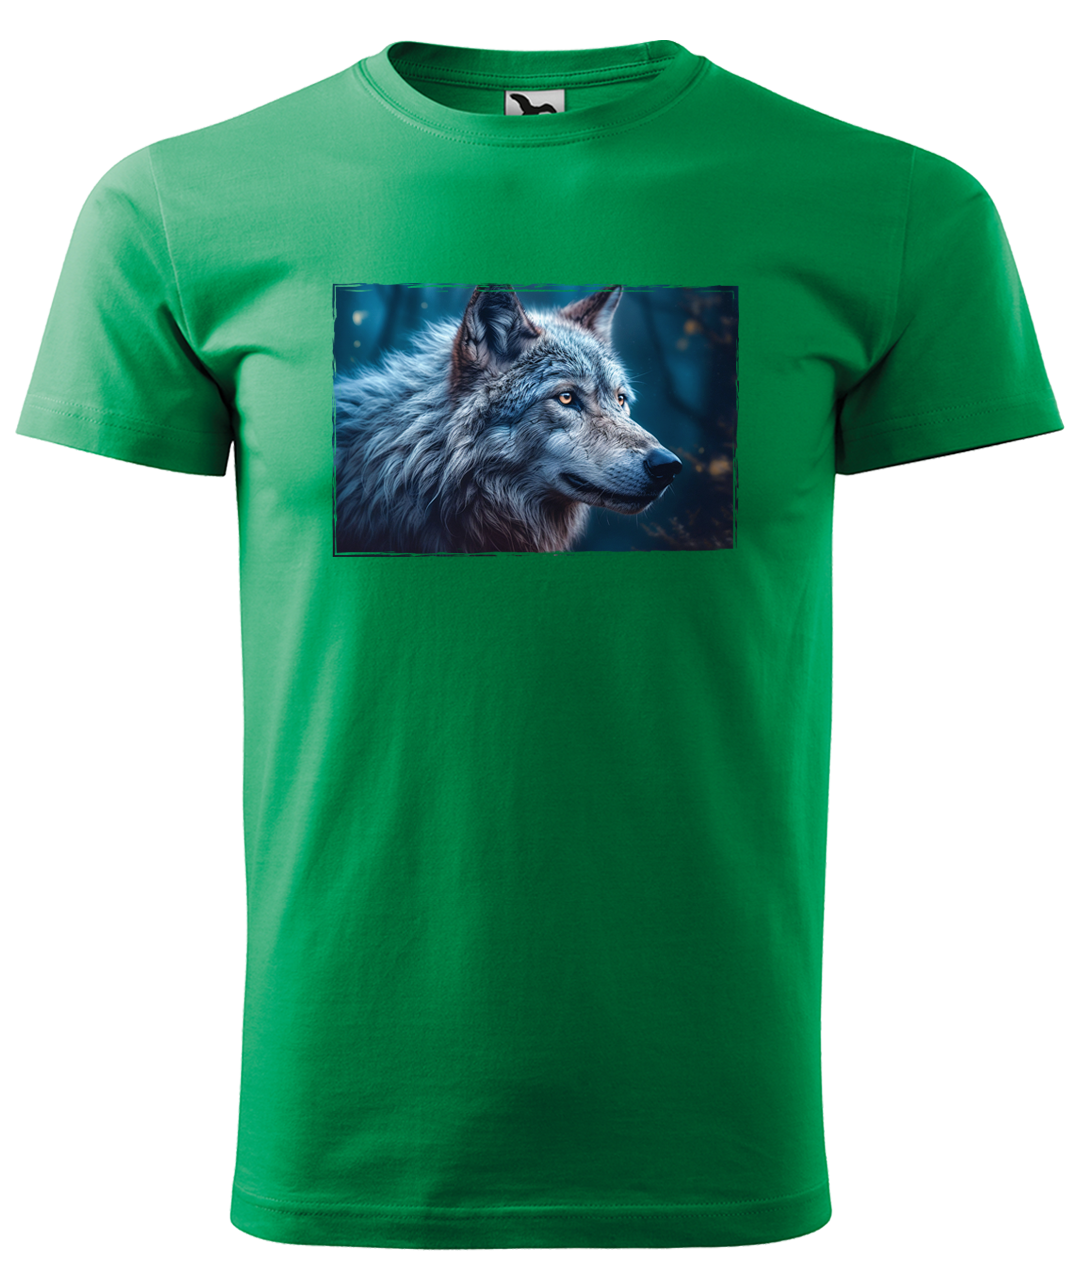 Dětské tričko s vlkem - Modrý vlk Velikost: 4 roky / 110 cm, Barva: Středně zelená (16)